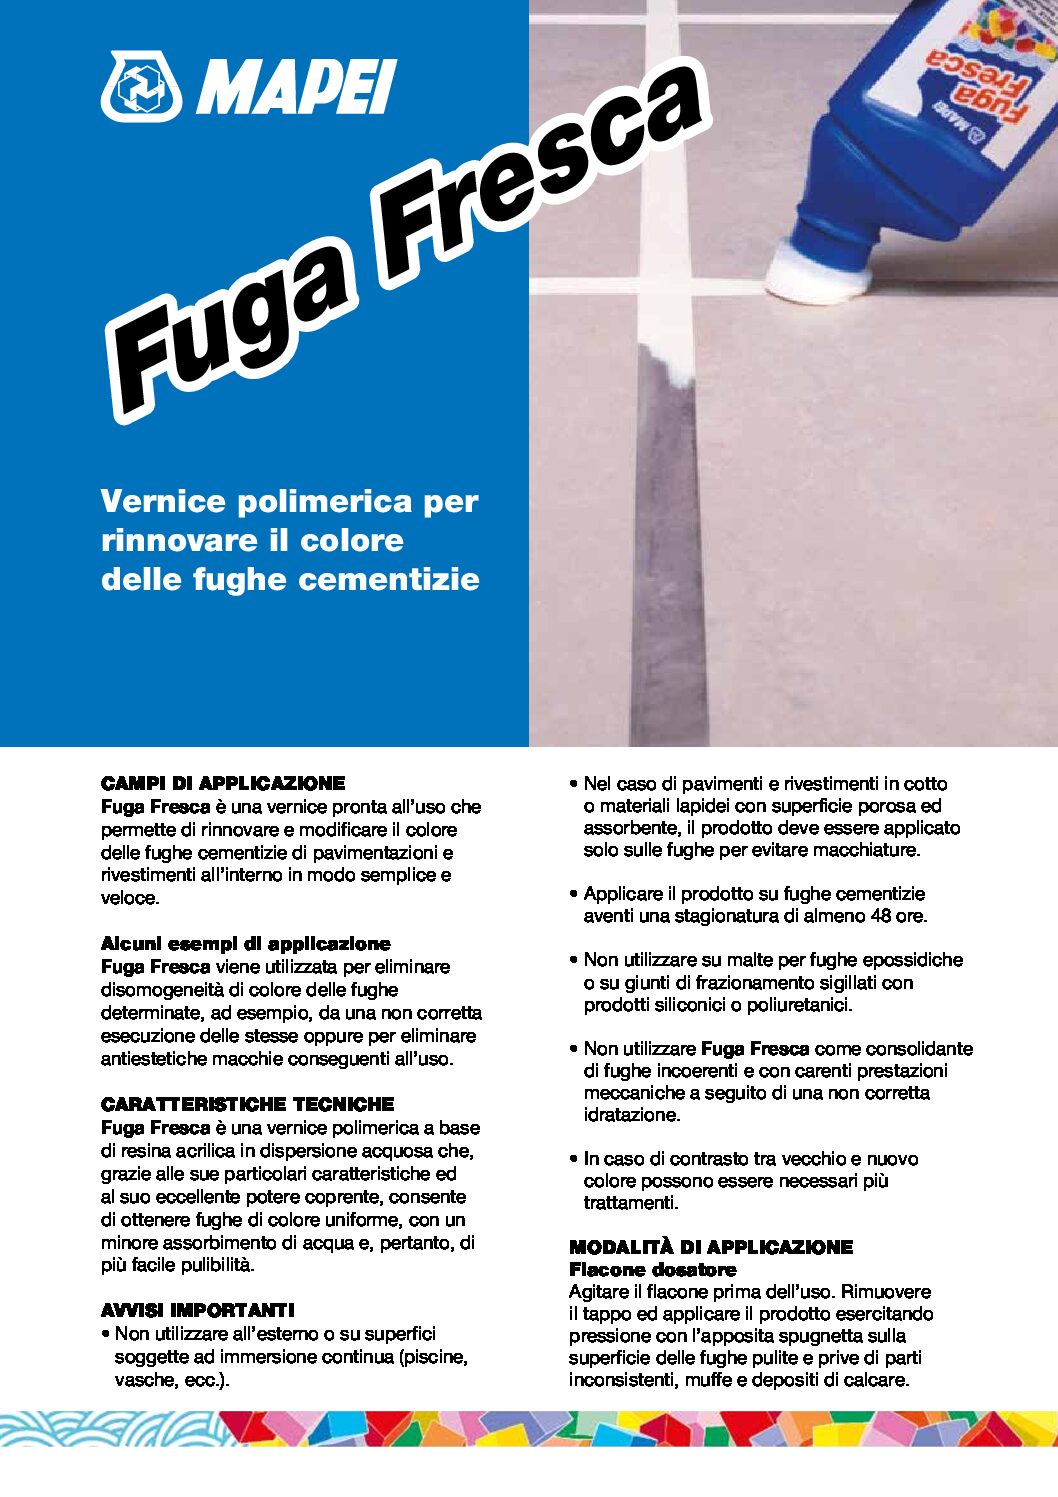 FUGA FRESCA KG.1 MAPEI 100 BIANCO PER RINNOVARE IL COLORE DELLE FUGHE